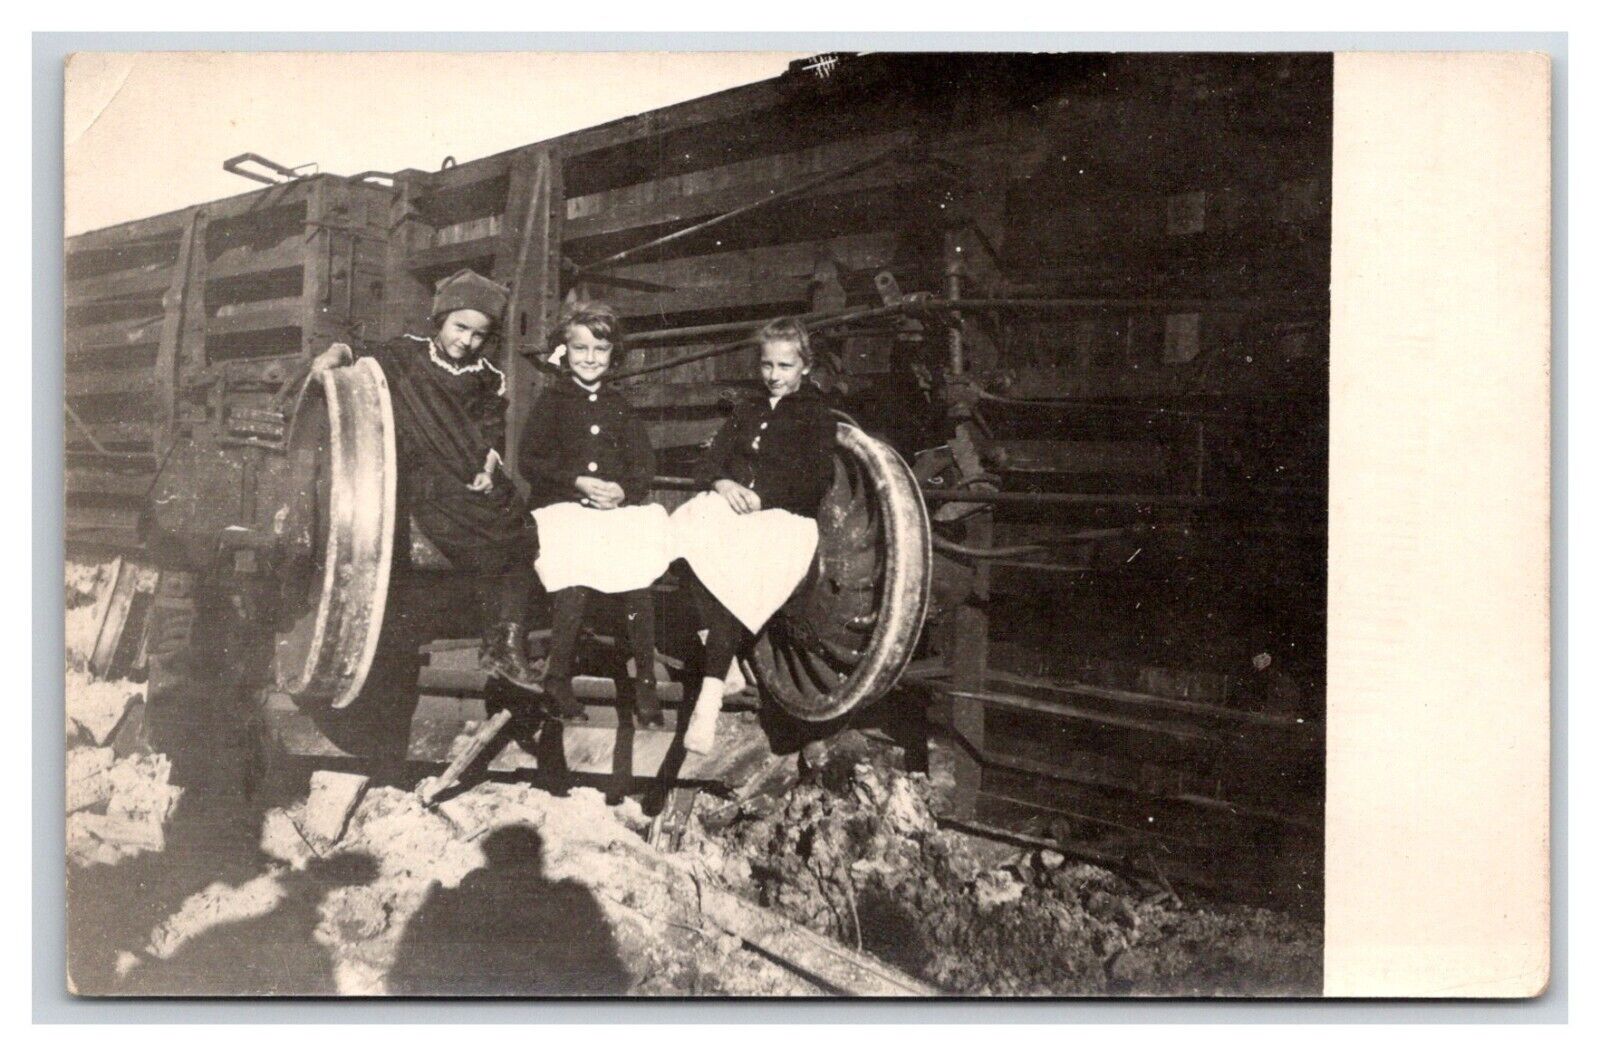 RPPC Train derailment Children on axle Railroad 1905c steam engine locomotive